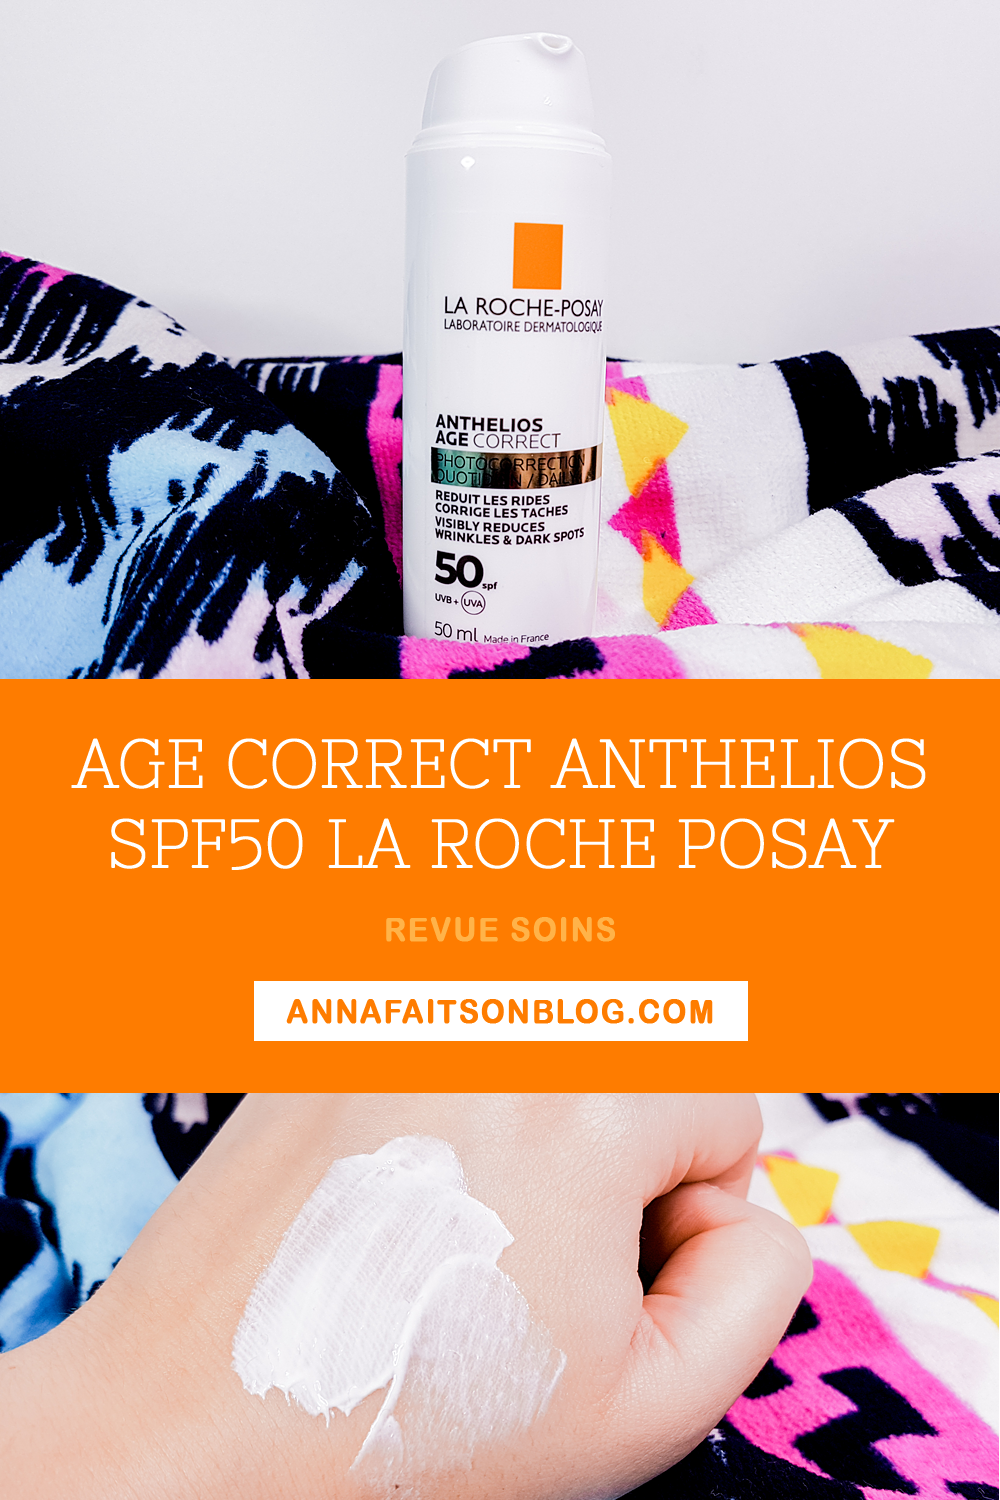 Age Correct Anthelios SPF 50 La Roche Posay